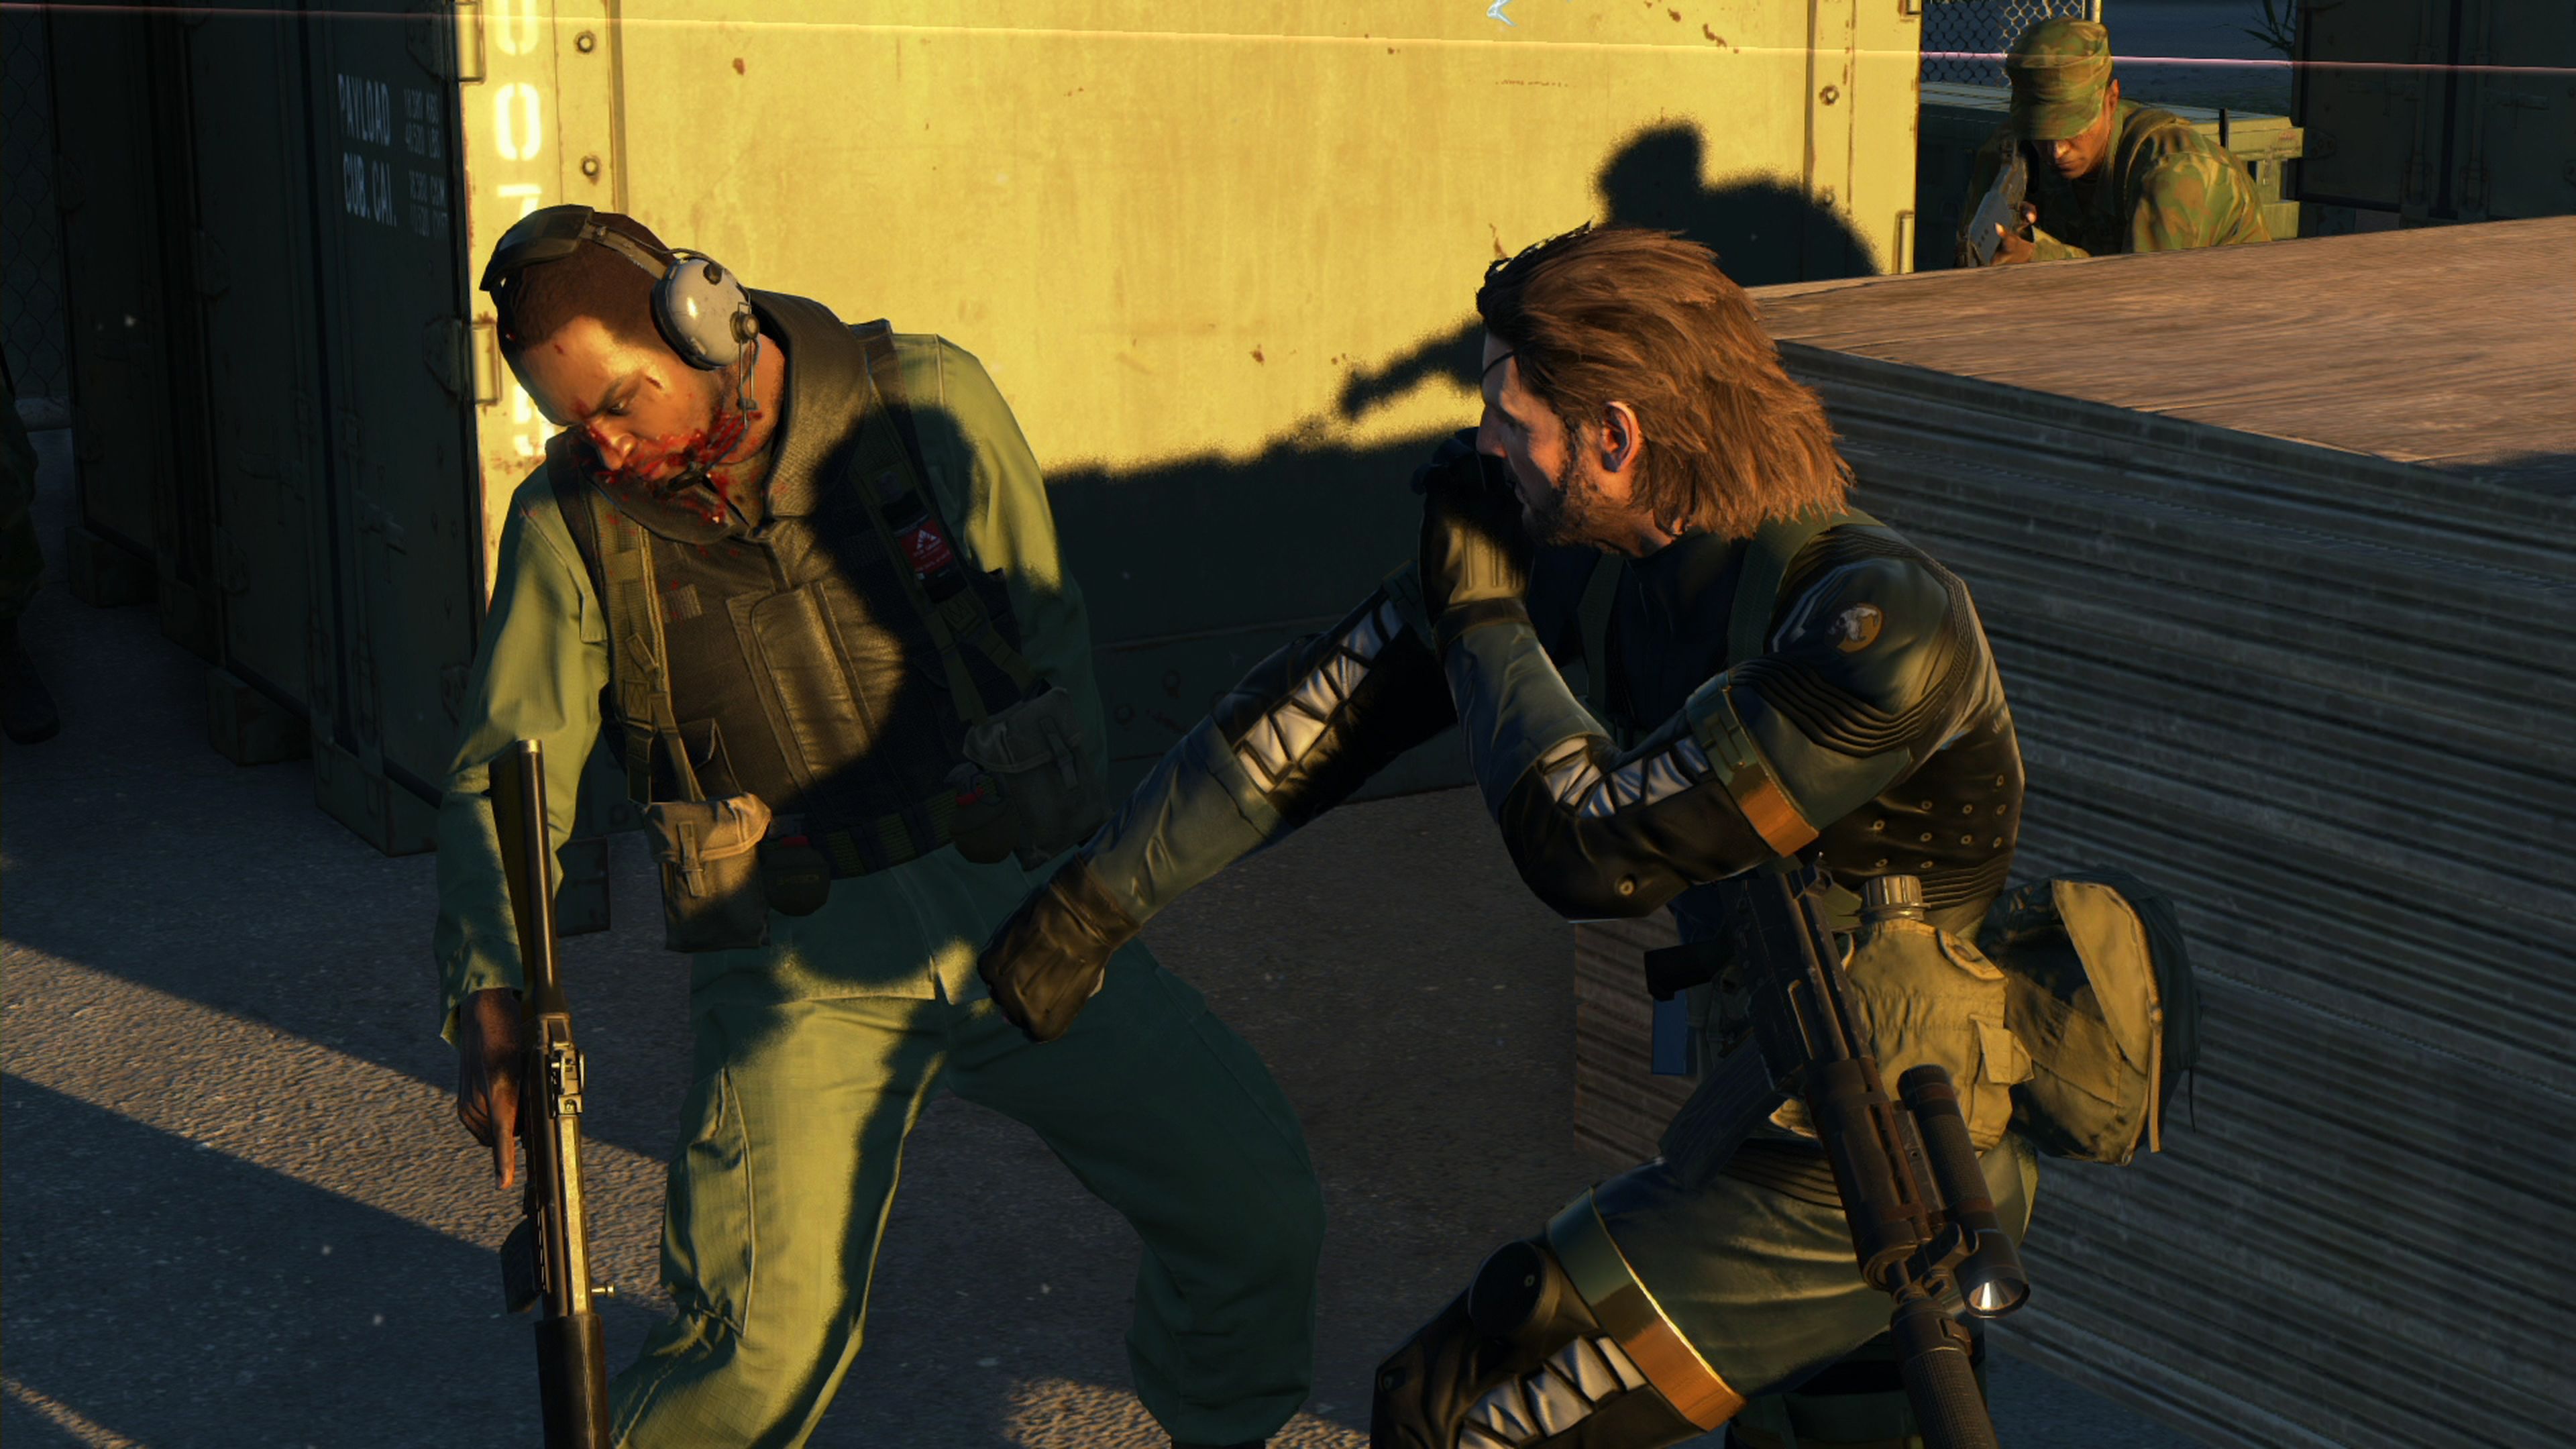 Análisis de Metal Gear Solid V Ground Zeroes